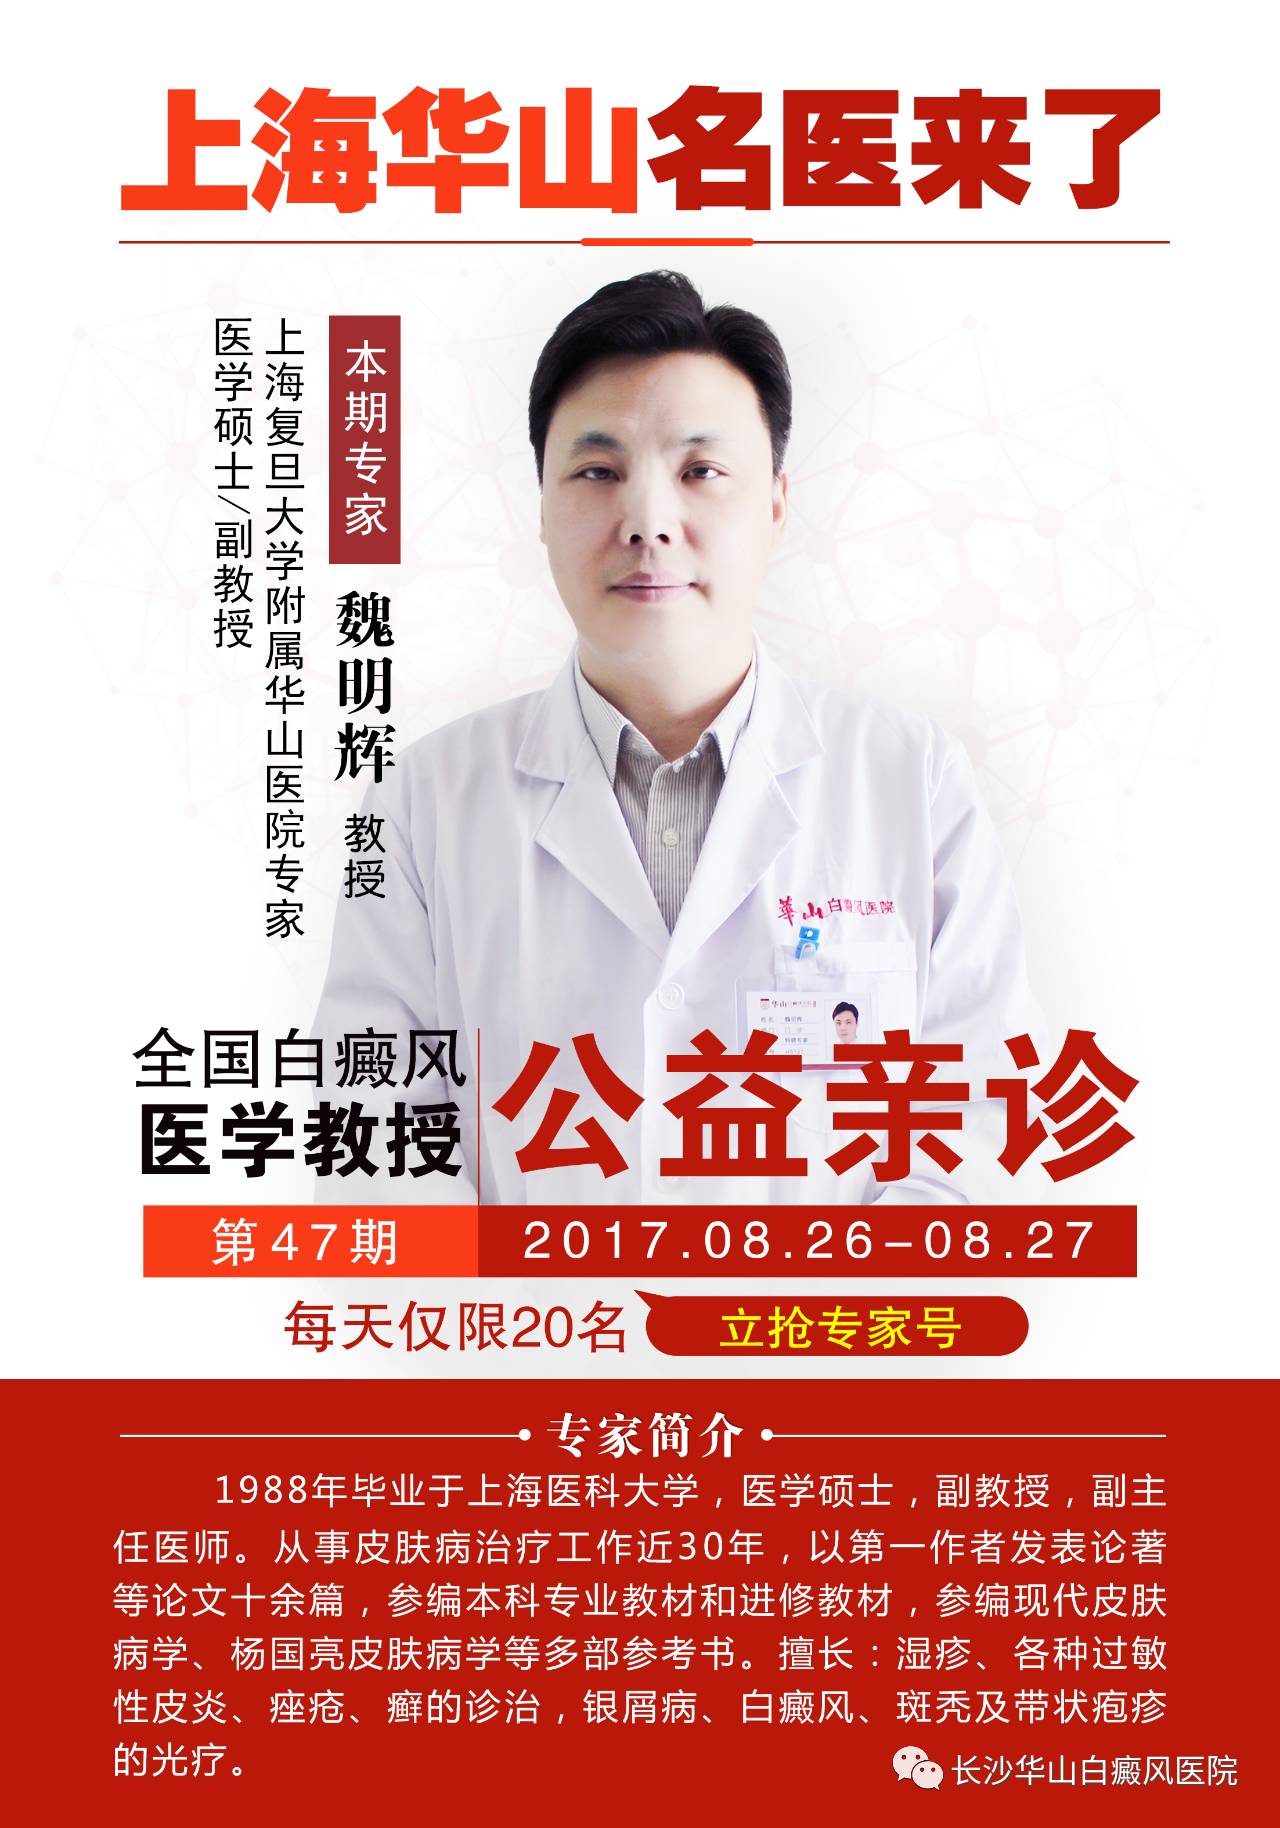 【机会难得】国内皮肤科排行TOP1医院--上海